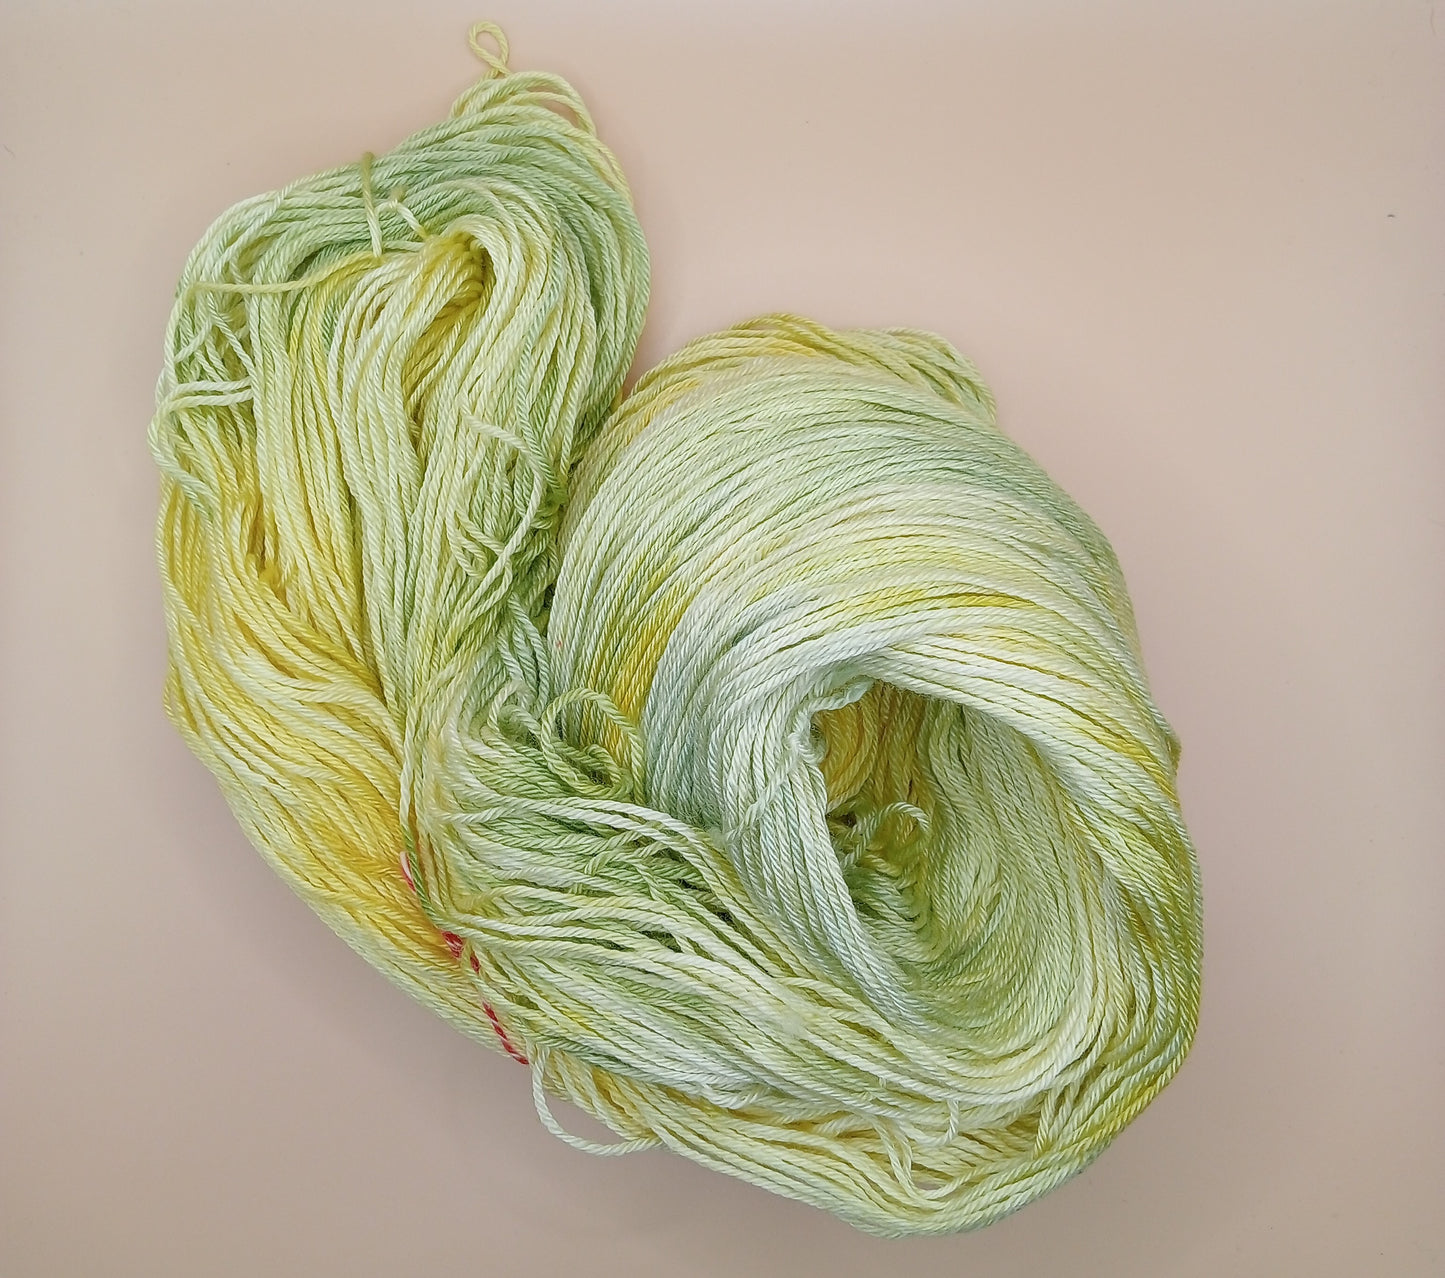 100G Merino/Silk hand dyed luxury Yarn 4 Ply- "Lemon n Limes"